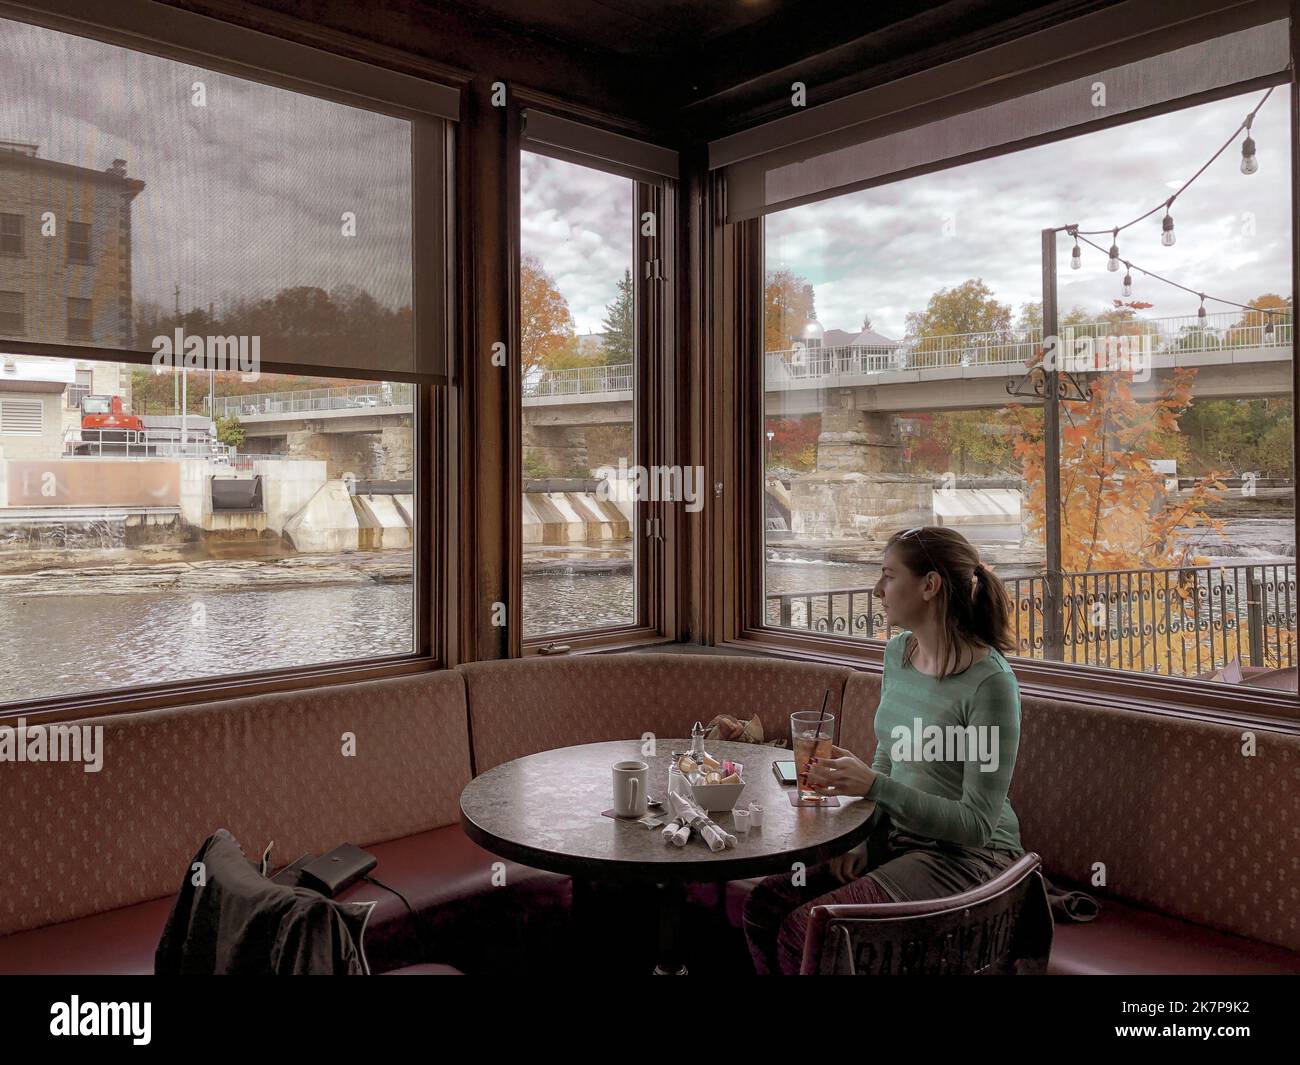 Una ragazza gode di un drink di fronte a un angolo pieno di vista caduta; retrò, immagine vintage della cena fuori. Foto Stock